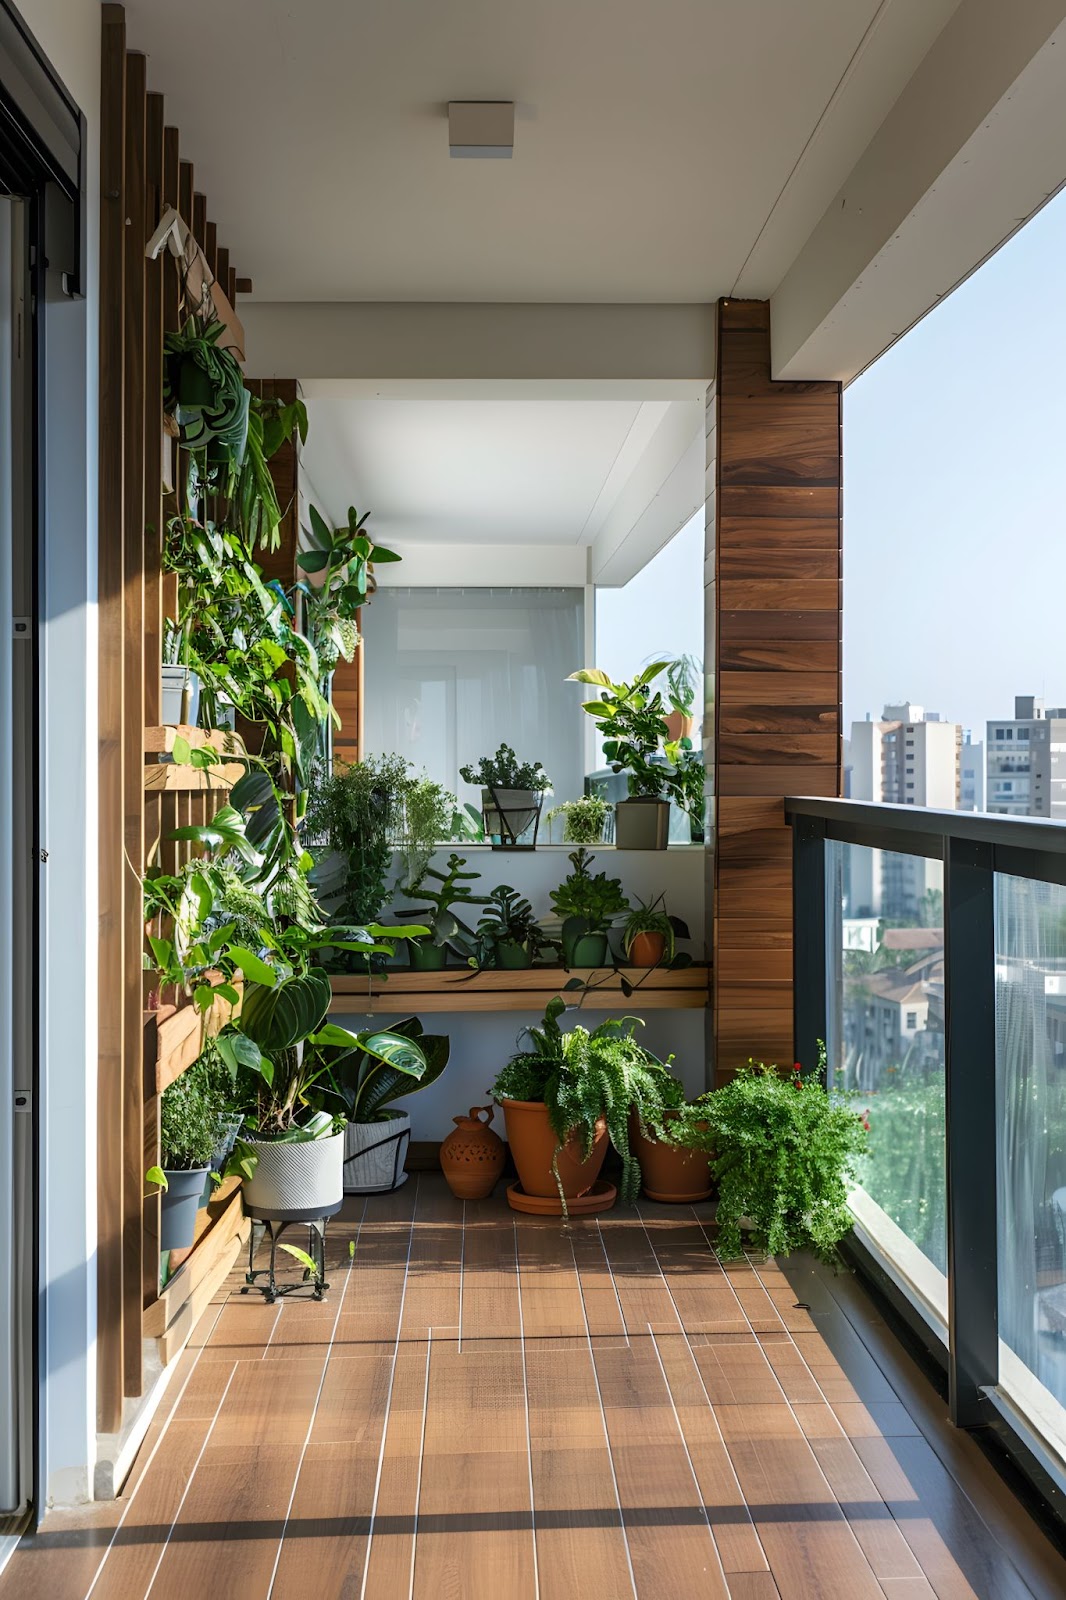 Balcon avec des petites plantes vertes.